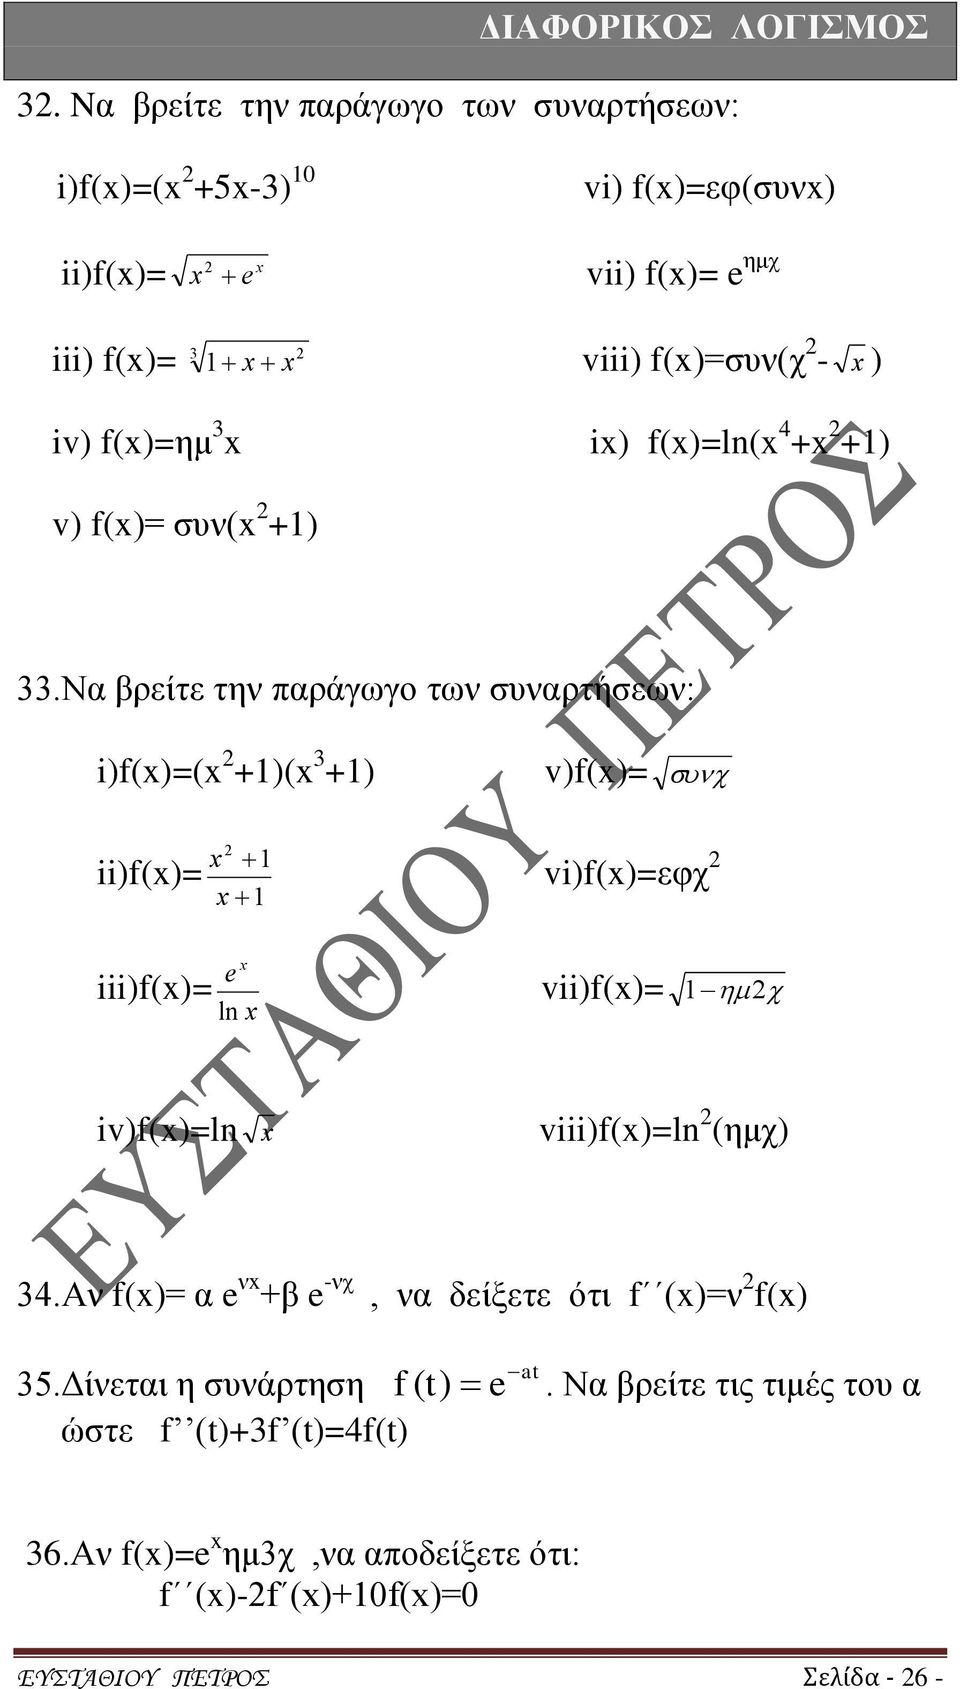 Να βρείτε την παράγωγο των συναρτήσεων: i)f()=( +1)( +1) ii)f()= 1 1 v)f()= vi)f()=εφχ iii)f()= e ln vii)f()= 1 iv)f()=ln viii)f()=ln